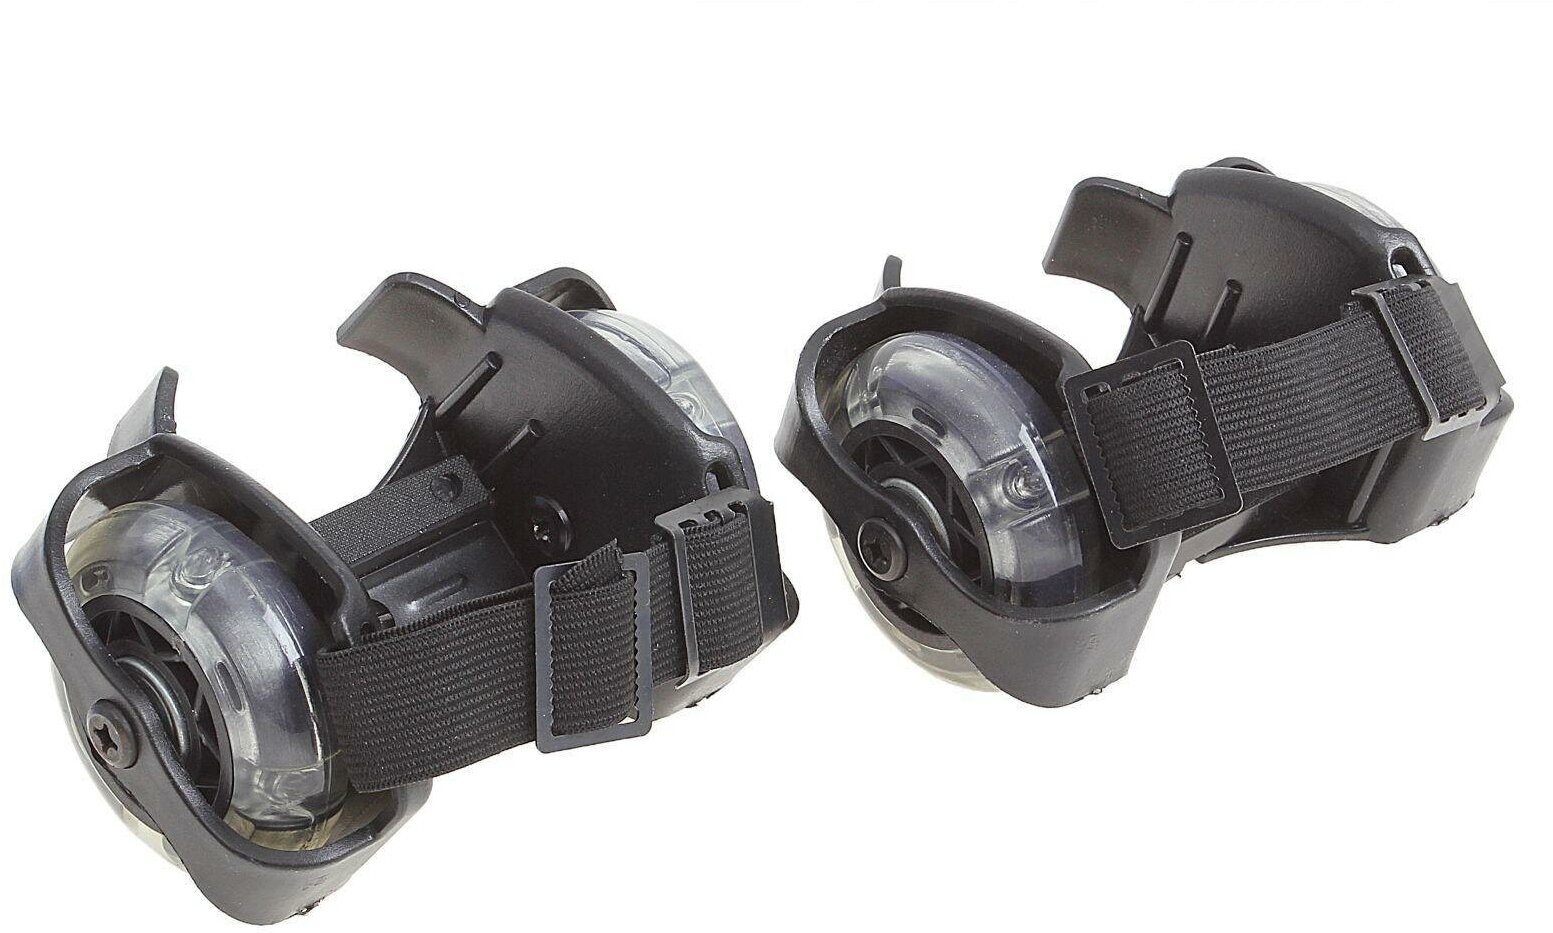 Ролики для обуви раздвижные ONLITOP, светящиеся колёса РVC 70 мм, ширина 6-10 см, до 70 кг, цвет чёрный